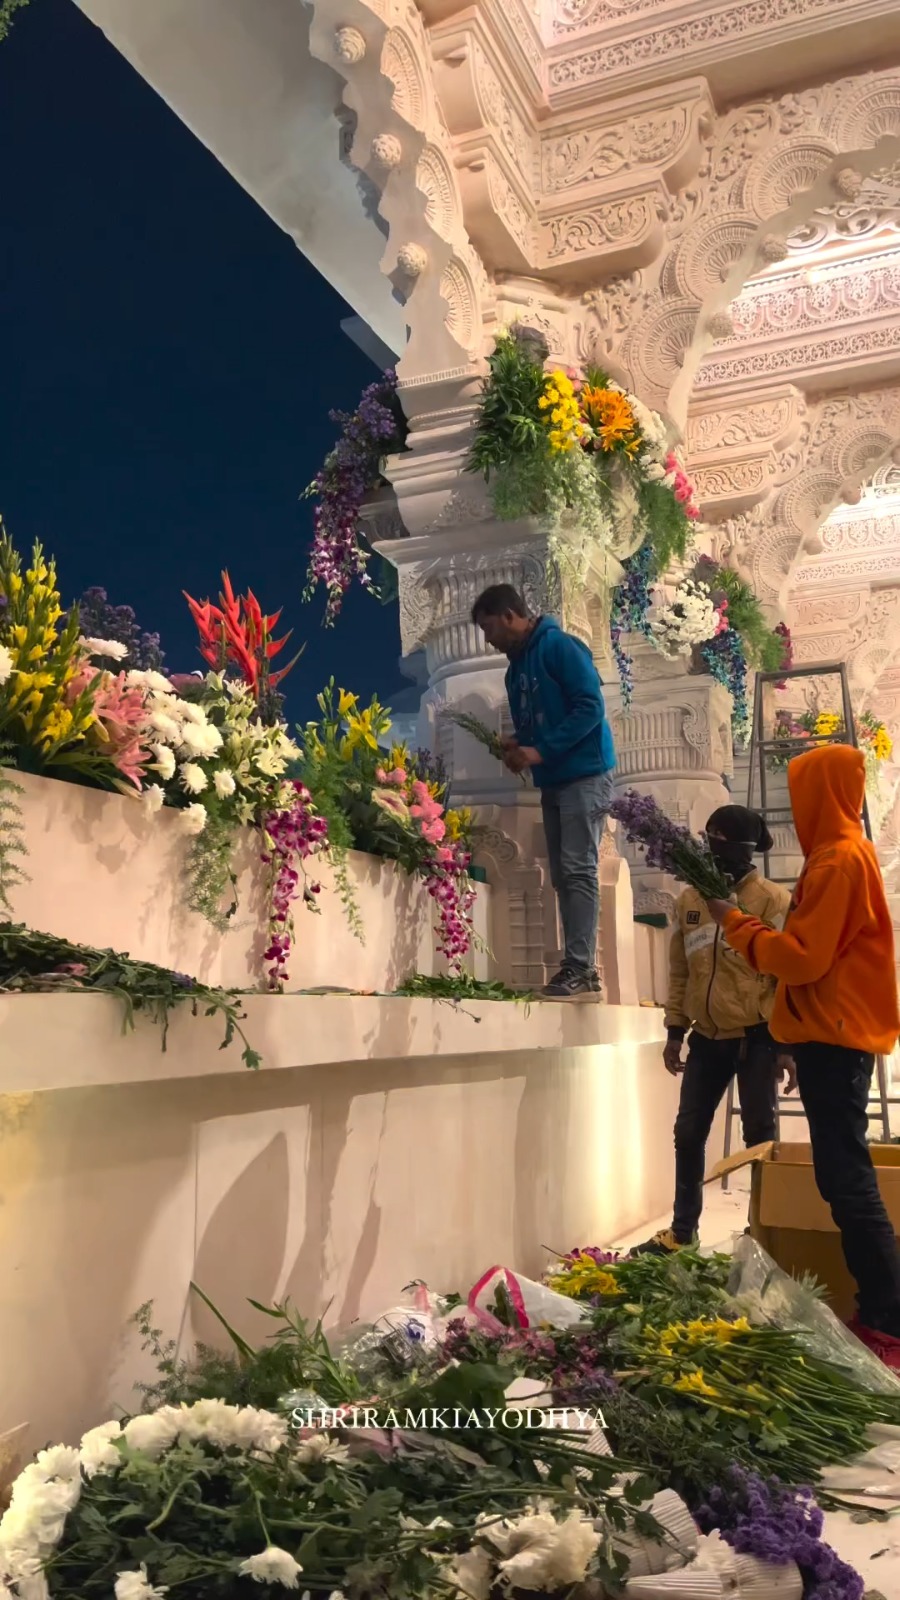 श्रीरामलला के स्वागत हेतु श्रीरामजन्मभूमि फूलों से सज्जित हो रही है 🙏🏻